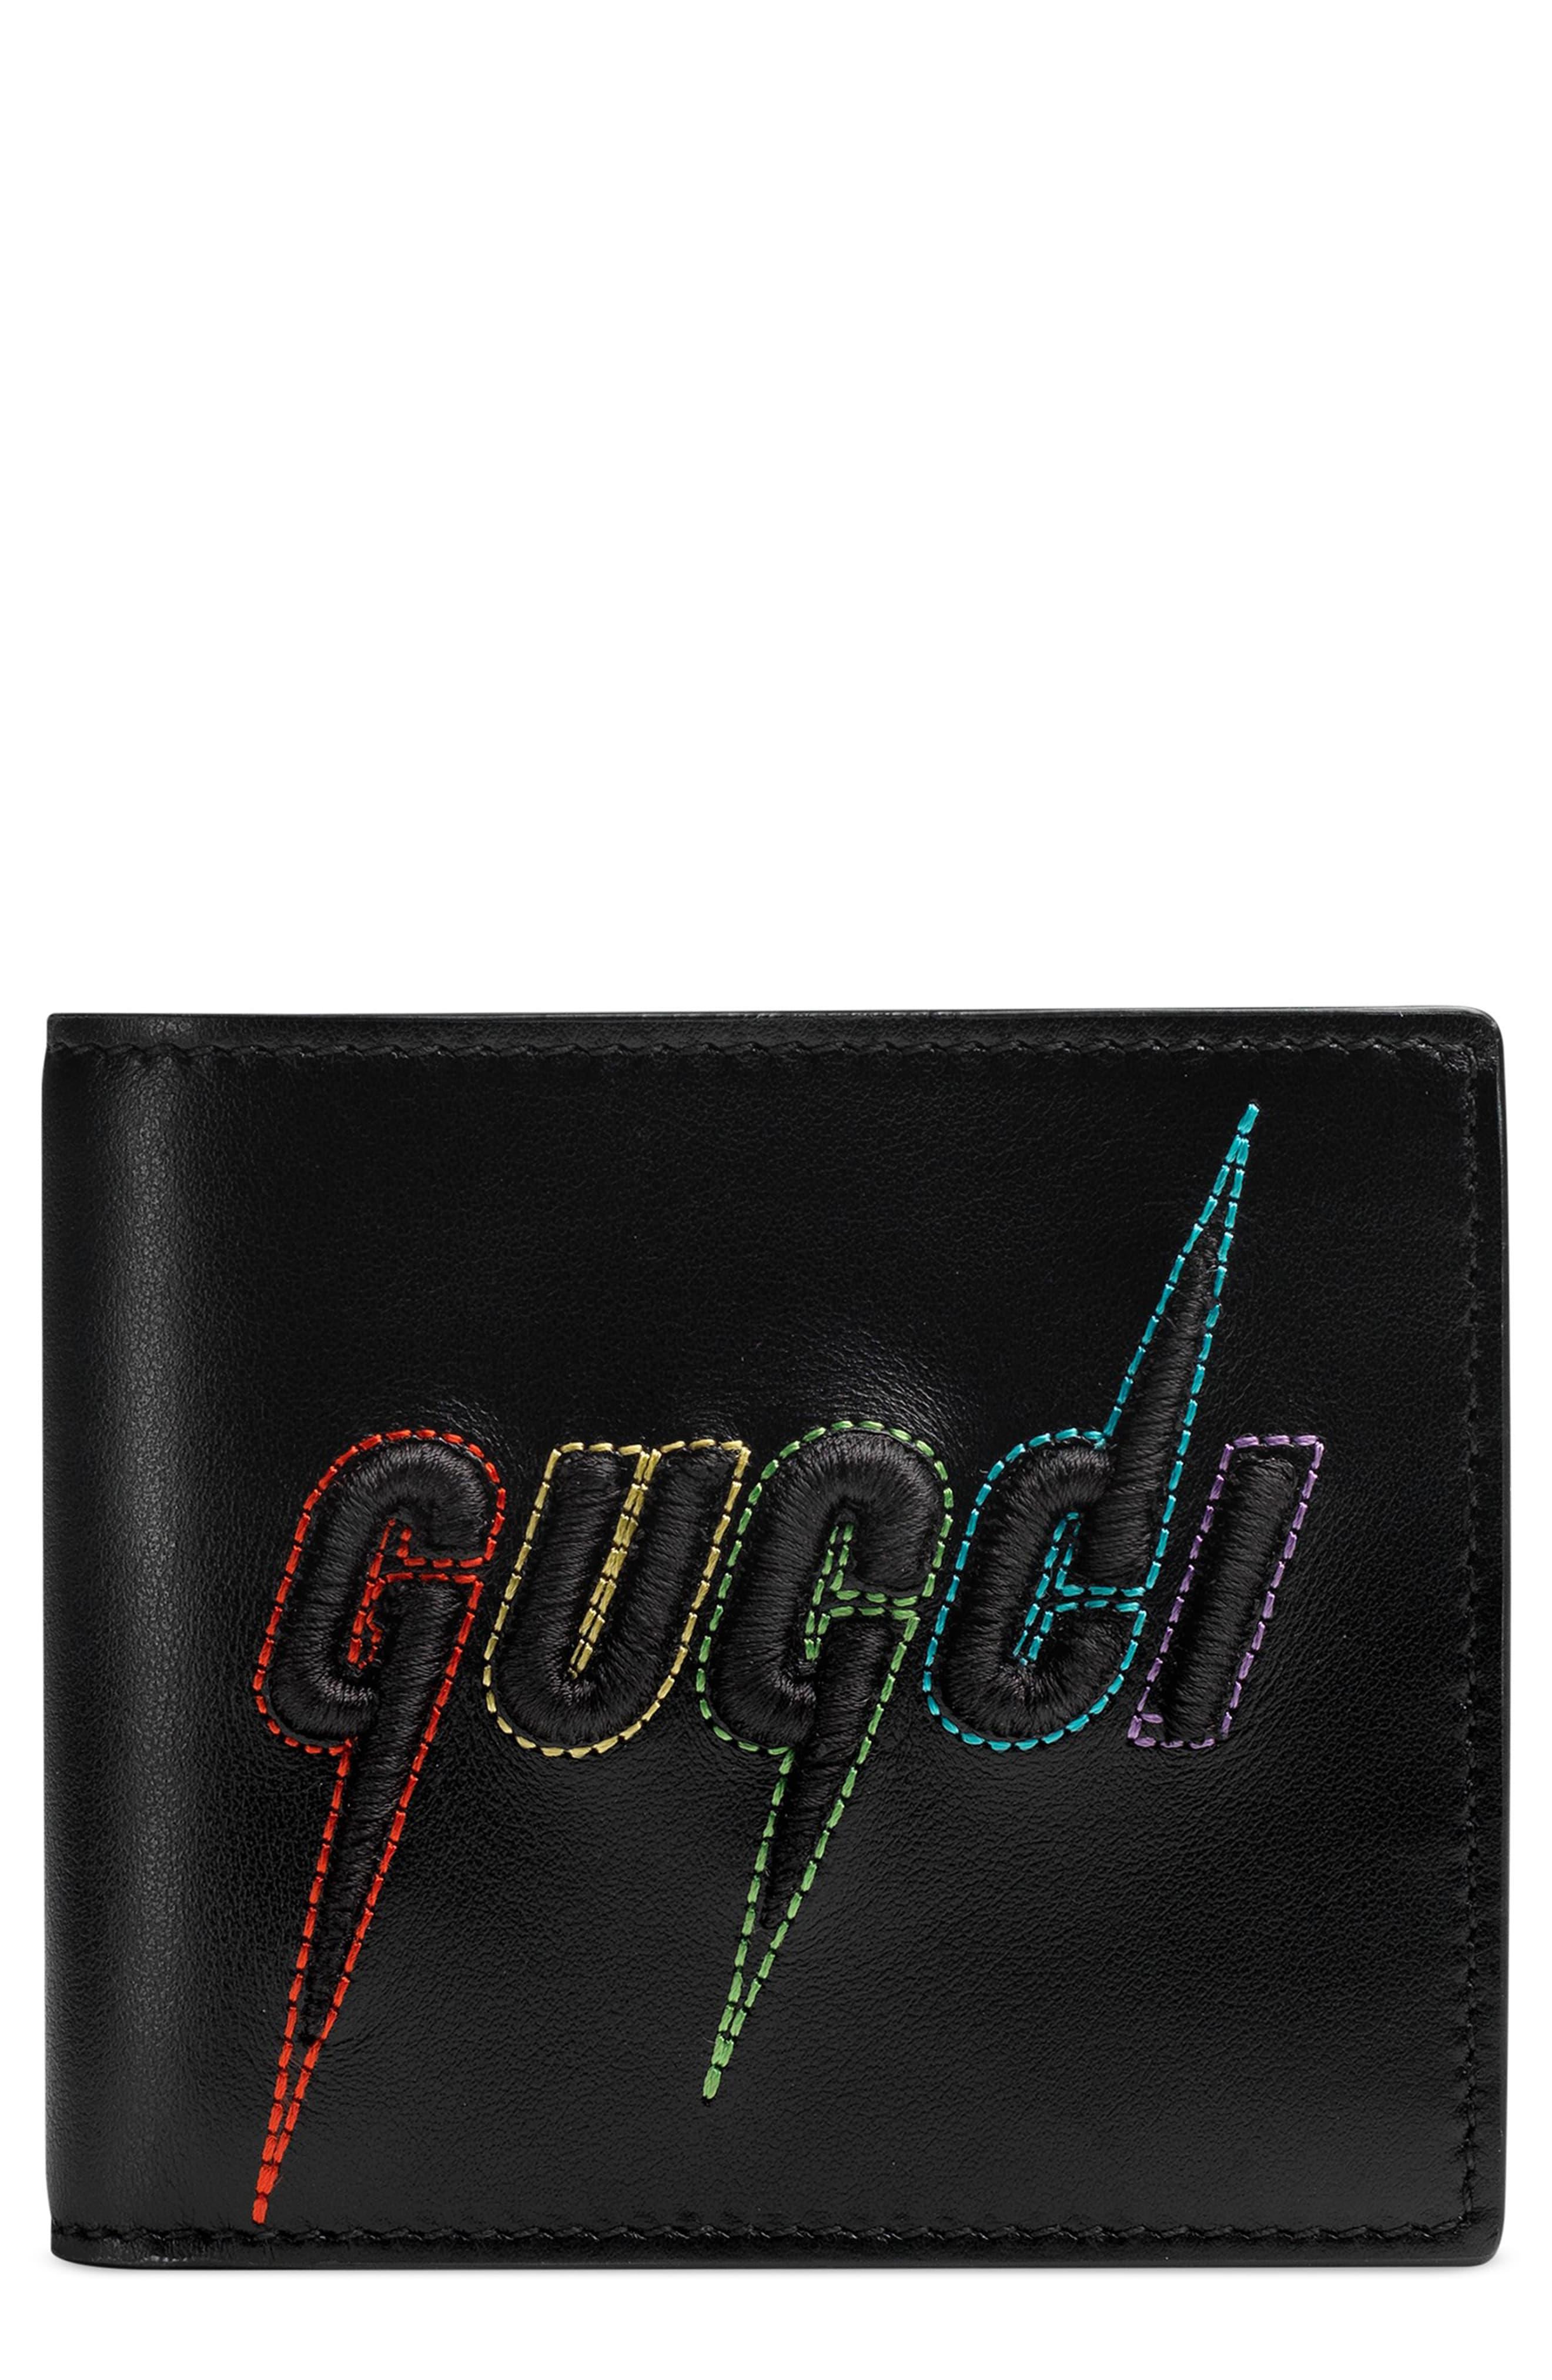 black gucci wallet